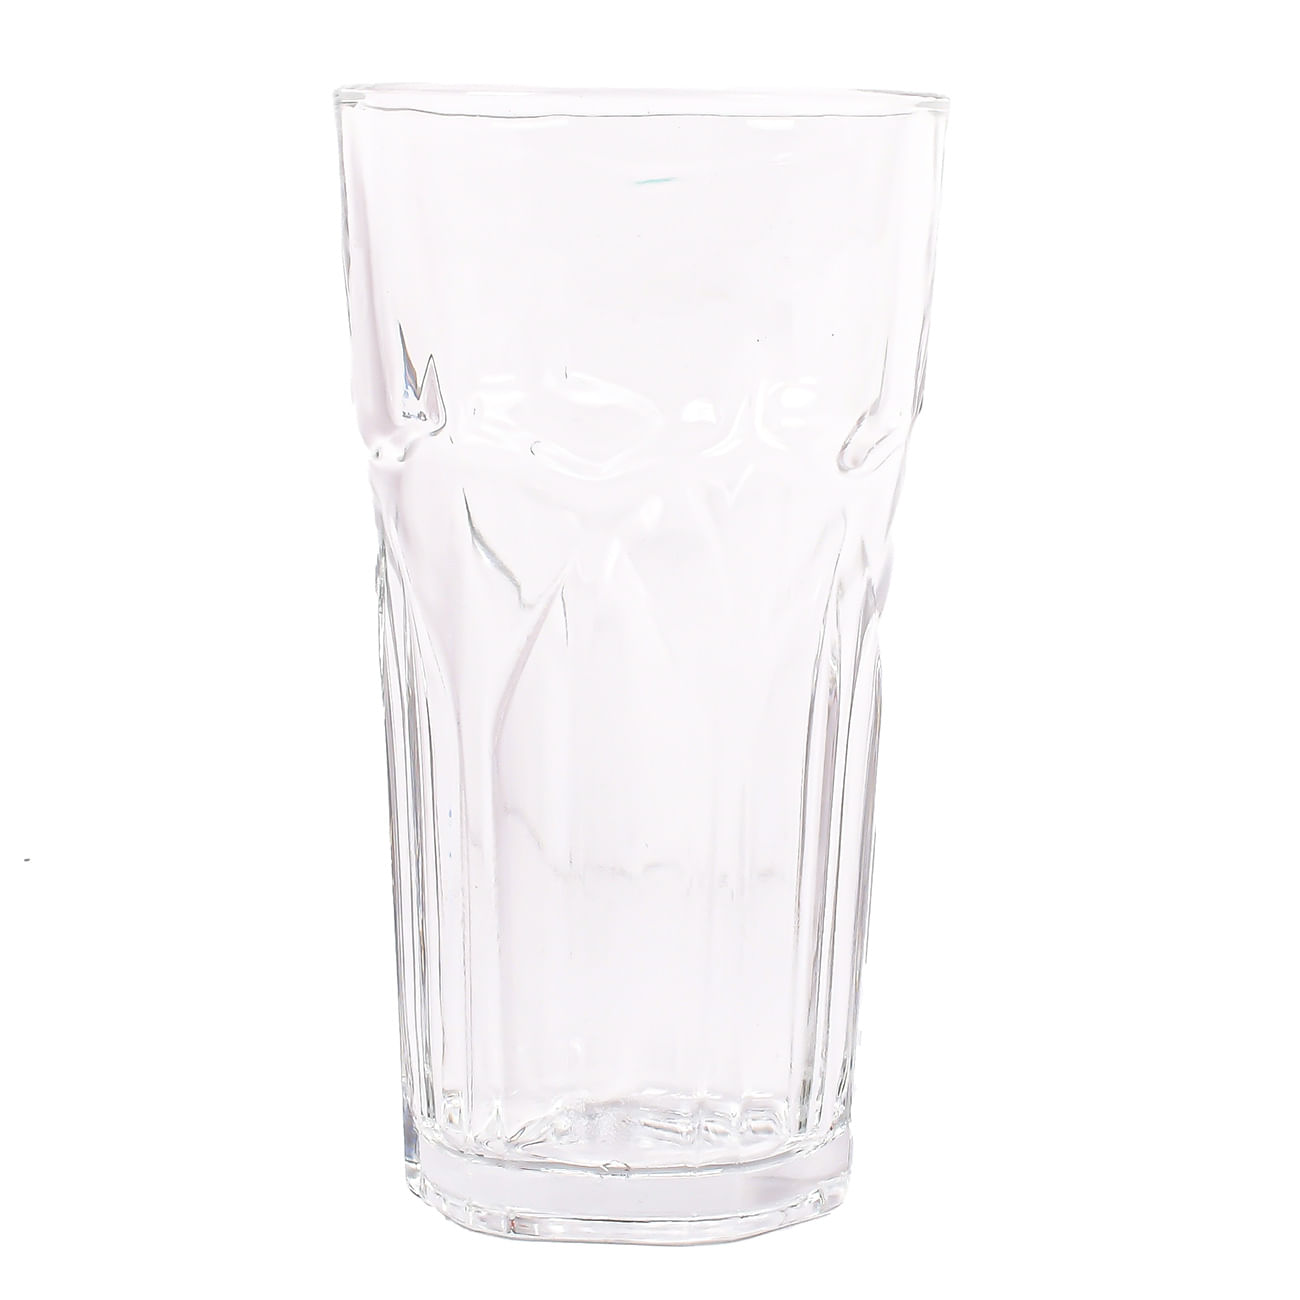 10 Vaso de vidrio satinado con asa para sublimación. Incluye tapa